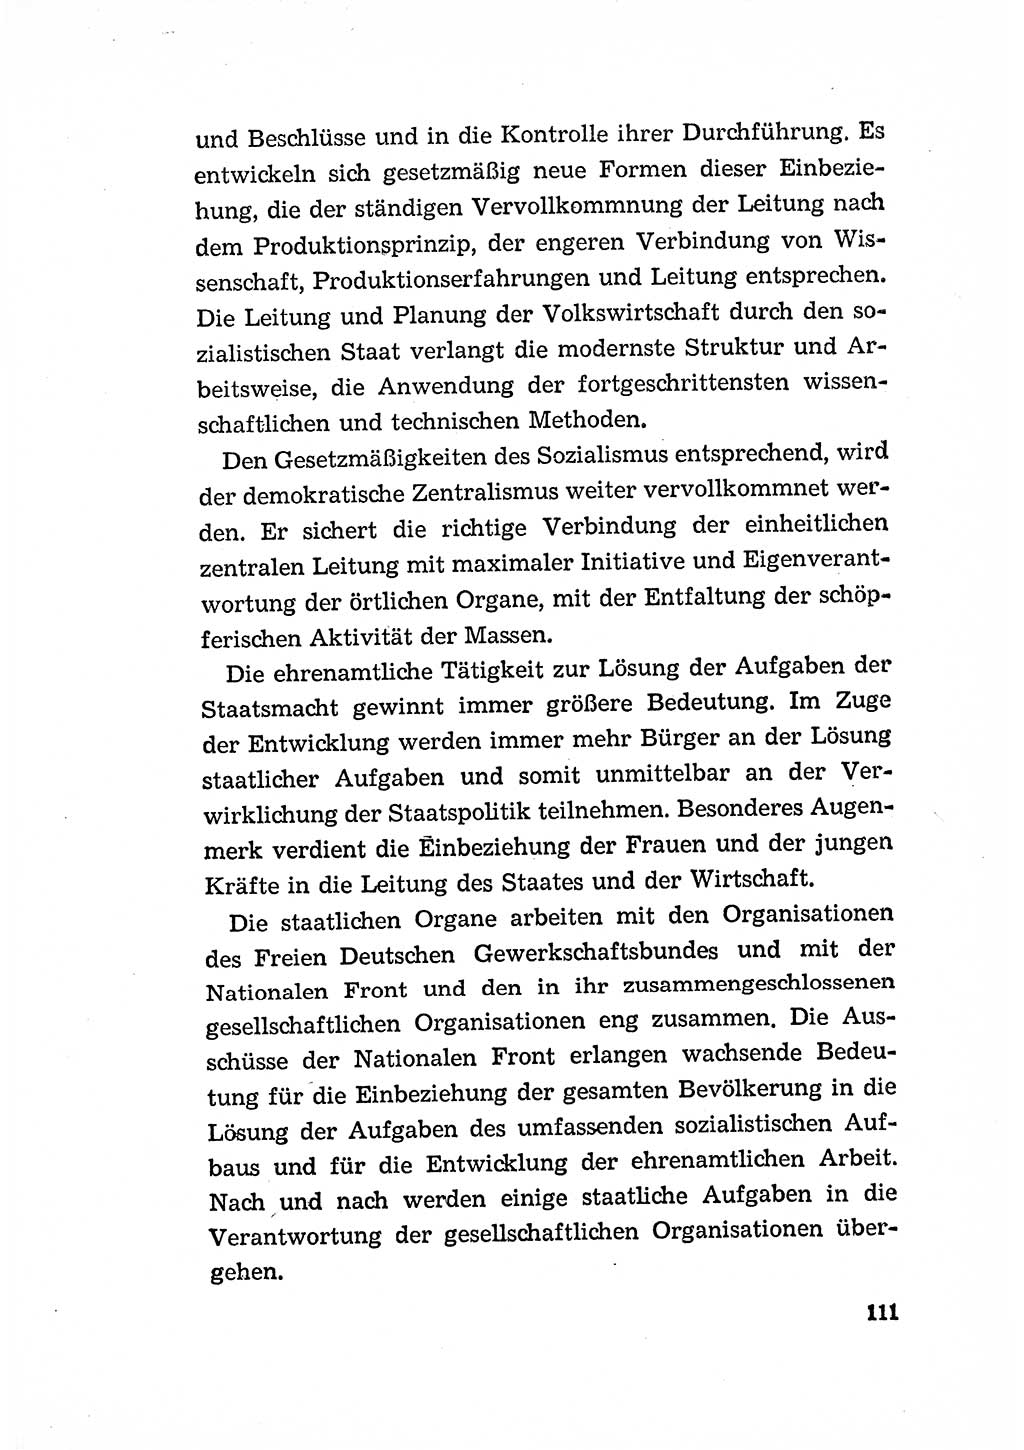 Programm der Sozialistischen Einheitspartei Deutschlands (SED) [Deutsche Demokratische Republik (DDR)] 1963, Seite 111 (Progr. SED DDR 1963, S. 111)